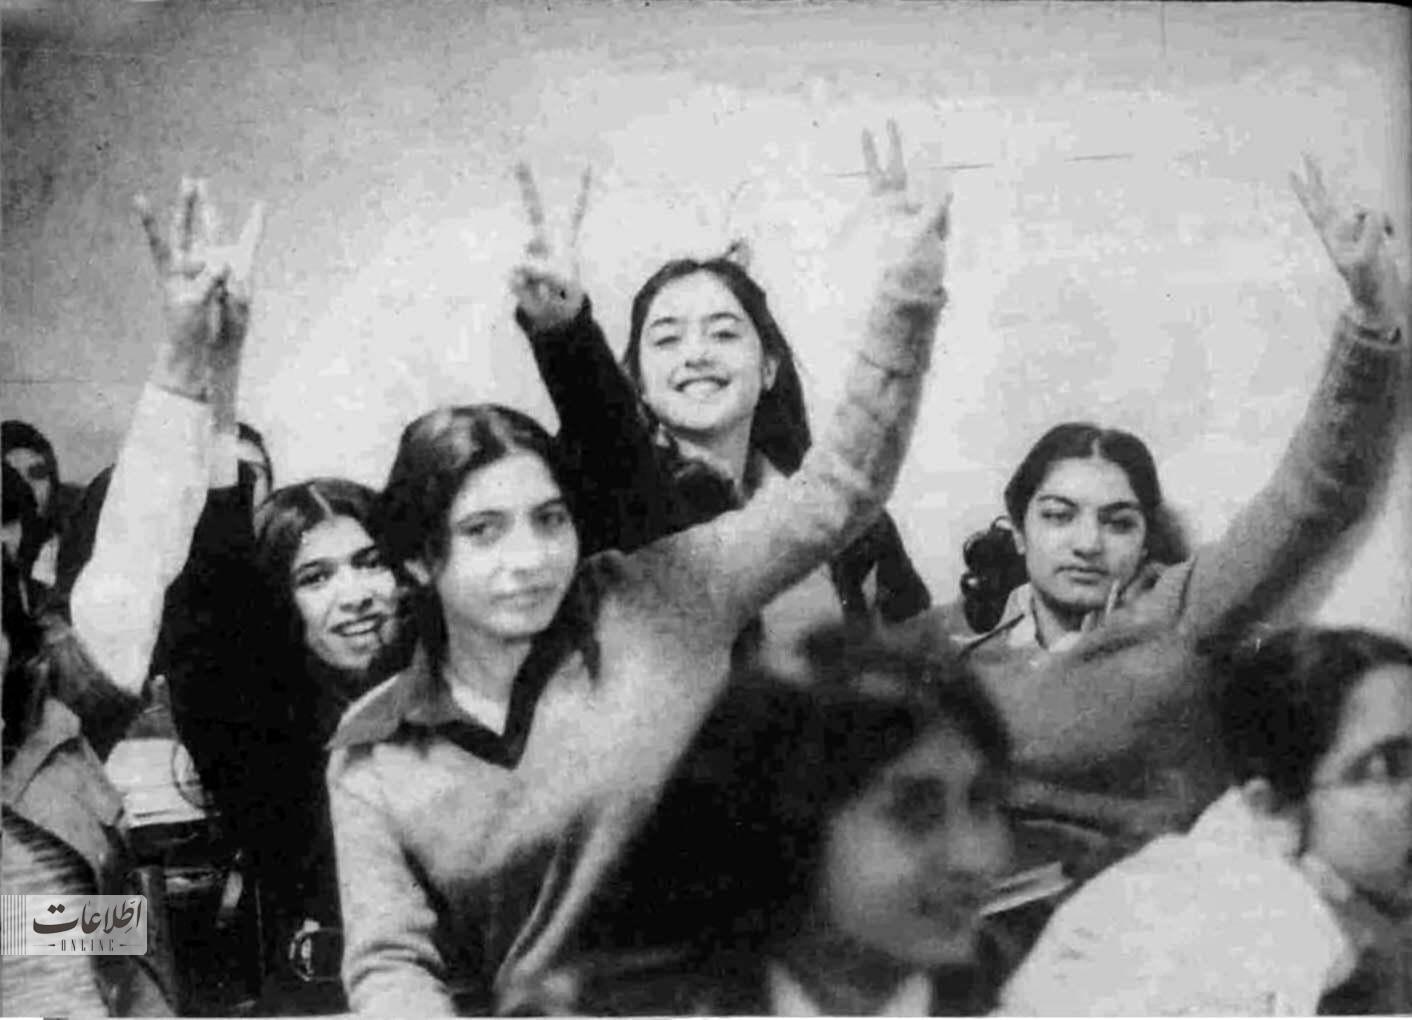 ۳ عکس متفاوت از یک دبیرستان دخترانه در اسفند ۵۷